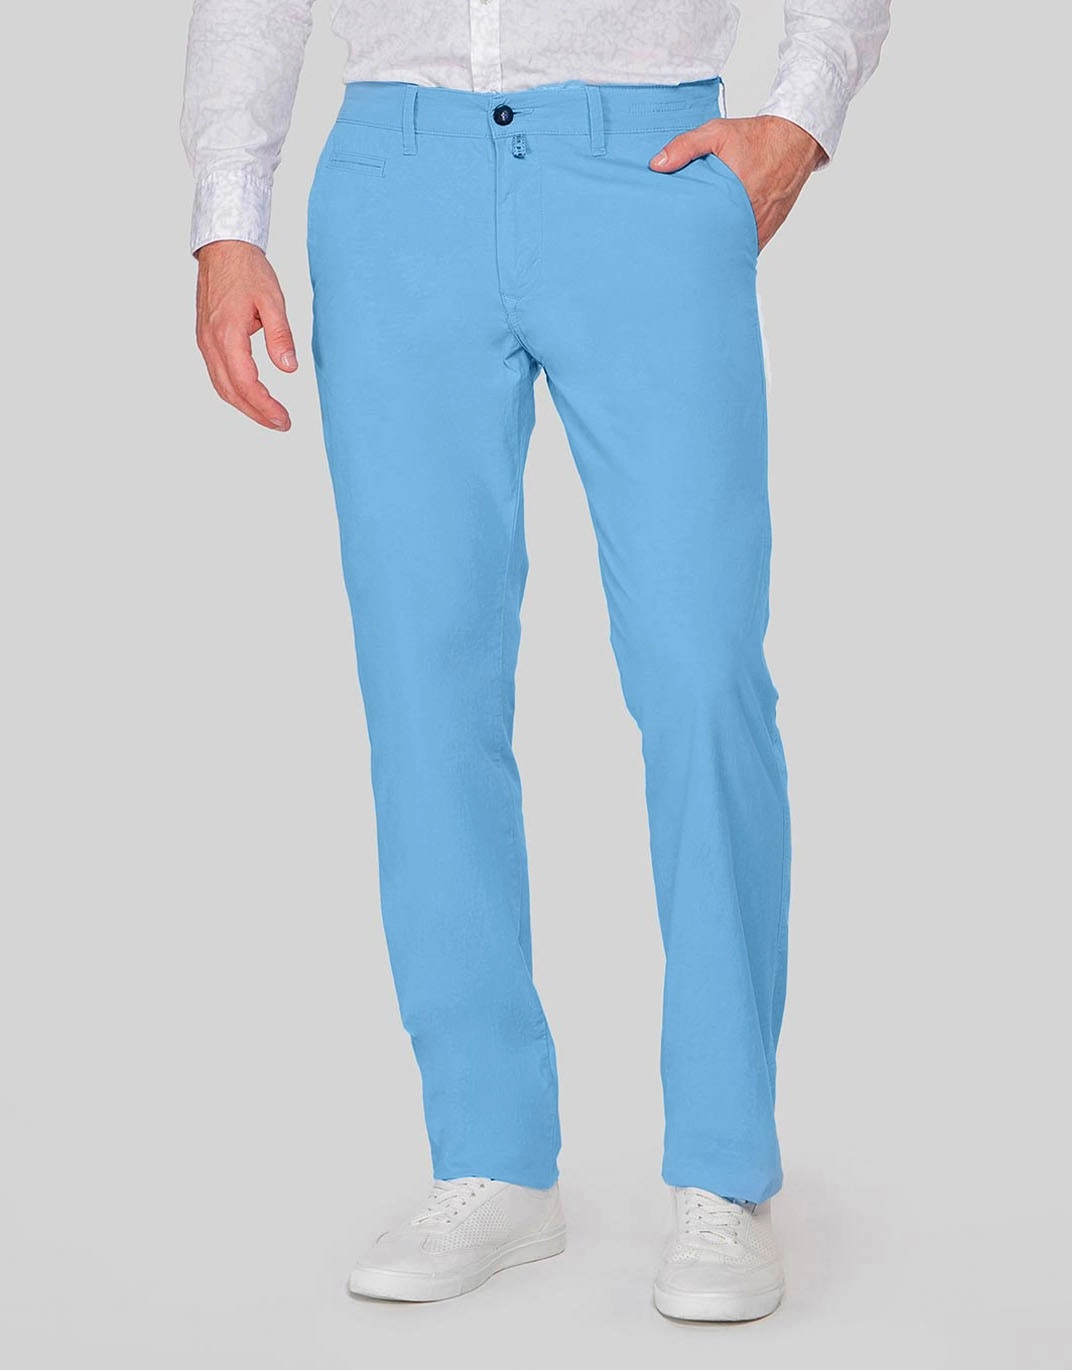 Pierre Cardin Blue Slim Fit Trousers Pant For Men price in UAE  Amazon UAE   kanbkam